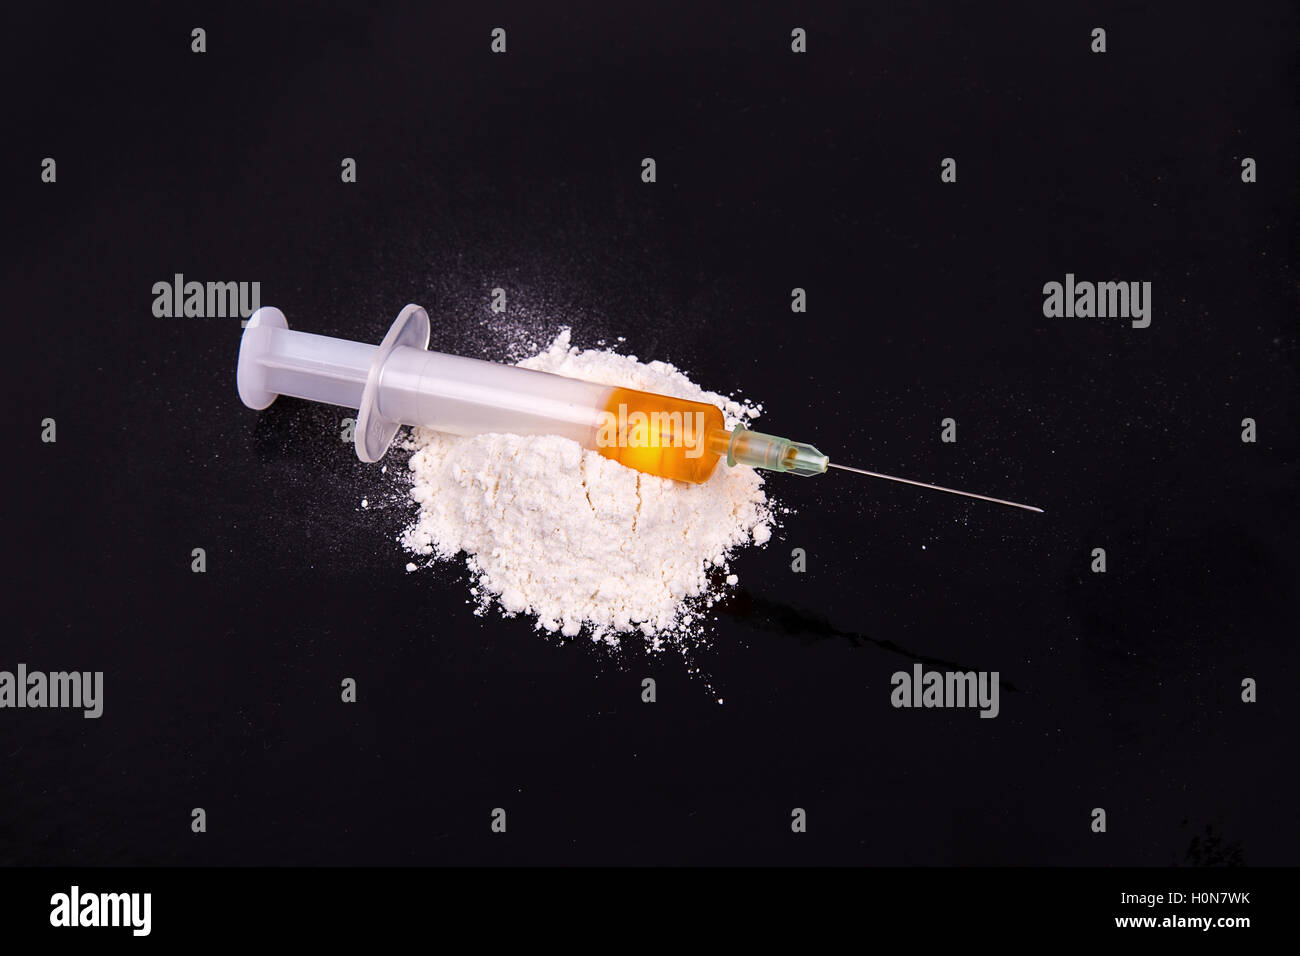 Cocaine and old syringe on black background Stock Photo